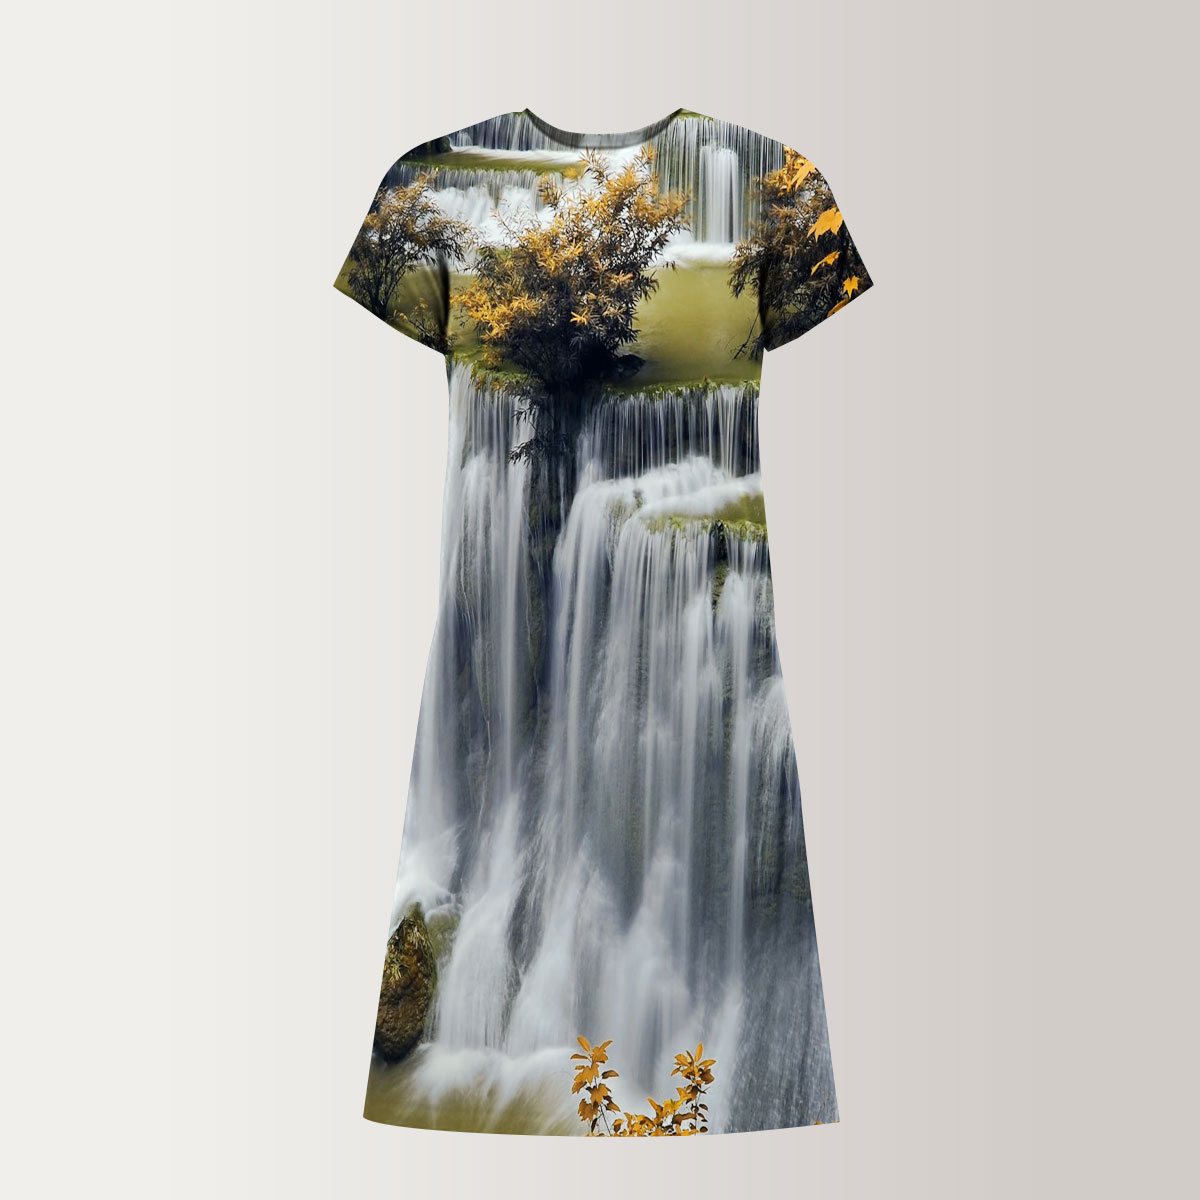 Stunning Autumn Waterfall T-Shirt Dress